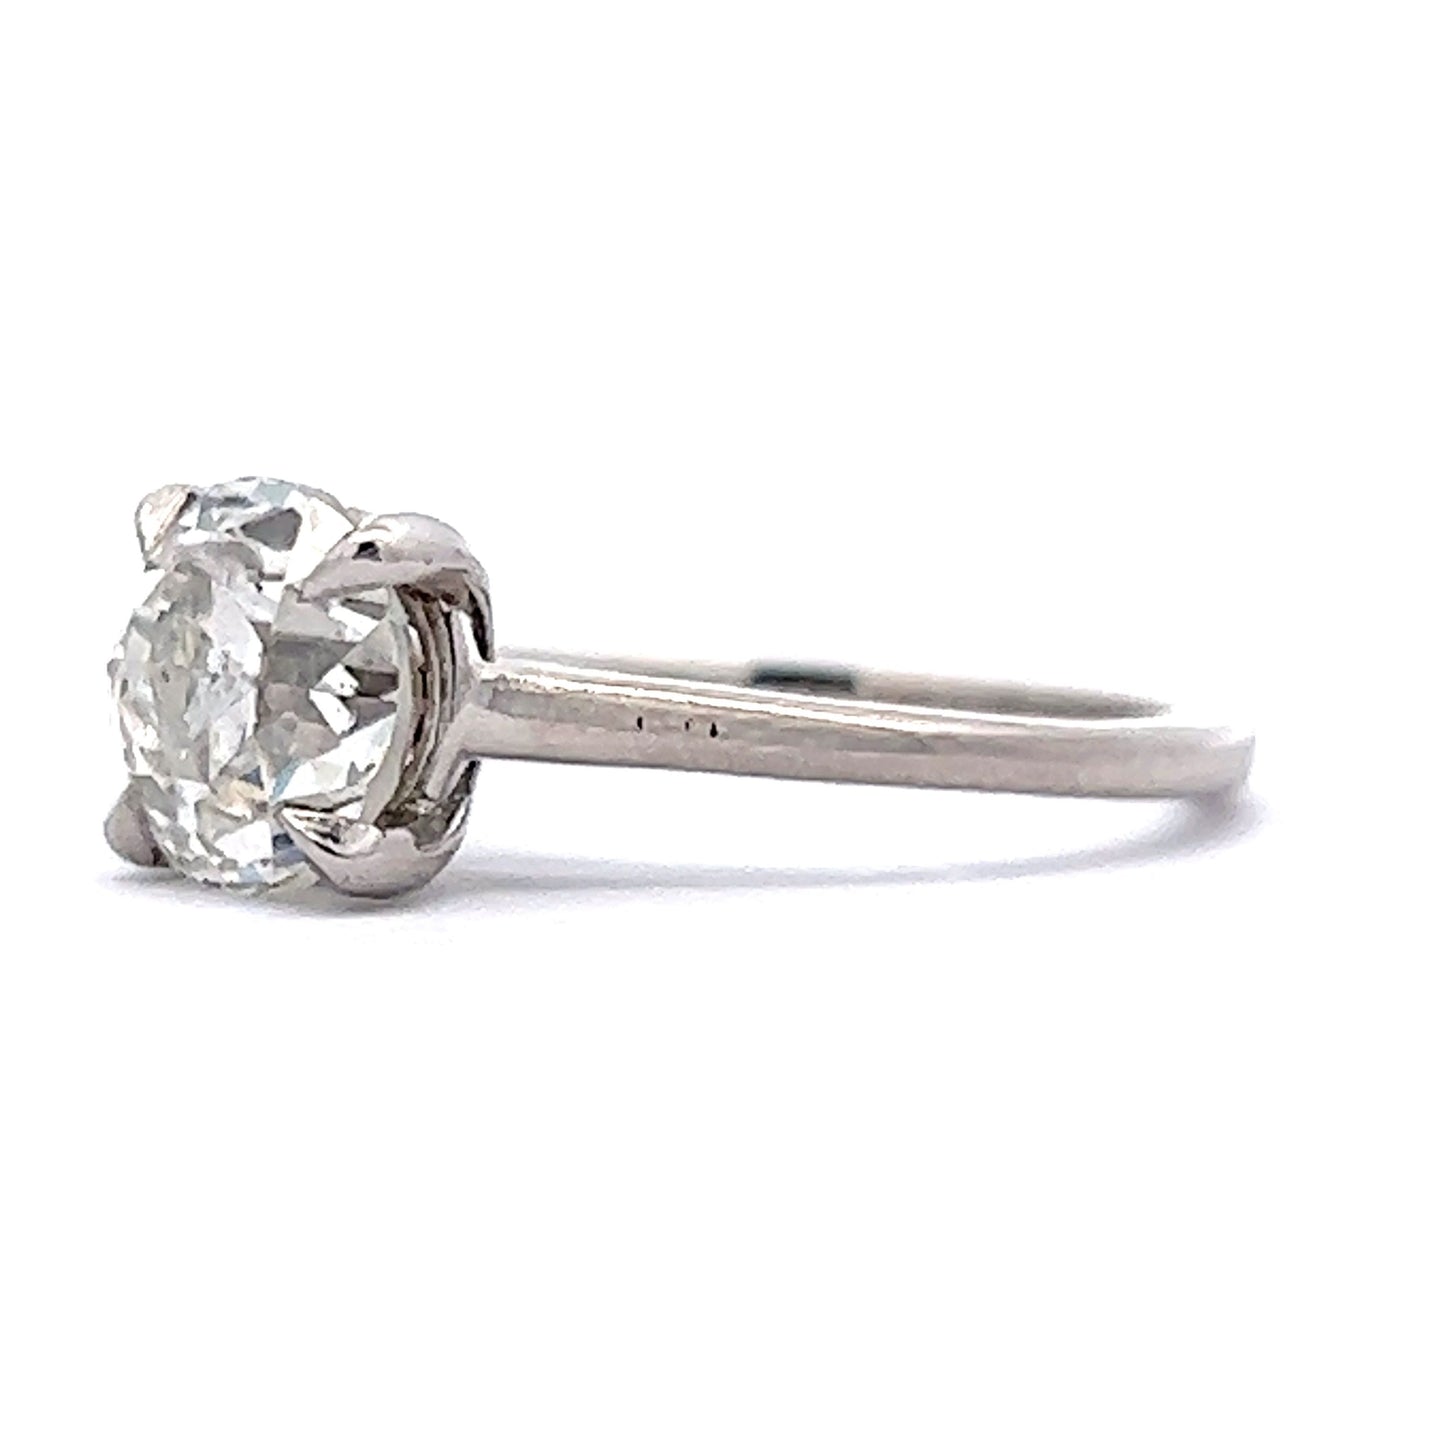 2.02 Old European Diamond Solitaire Engagement Ring in Platinum